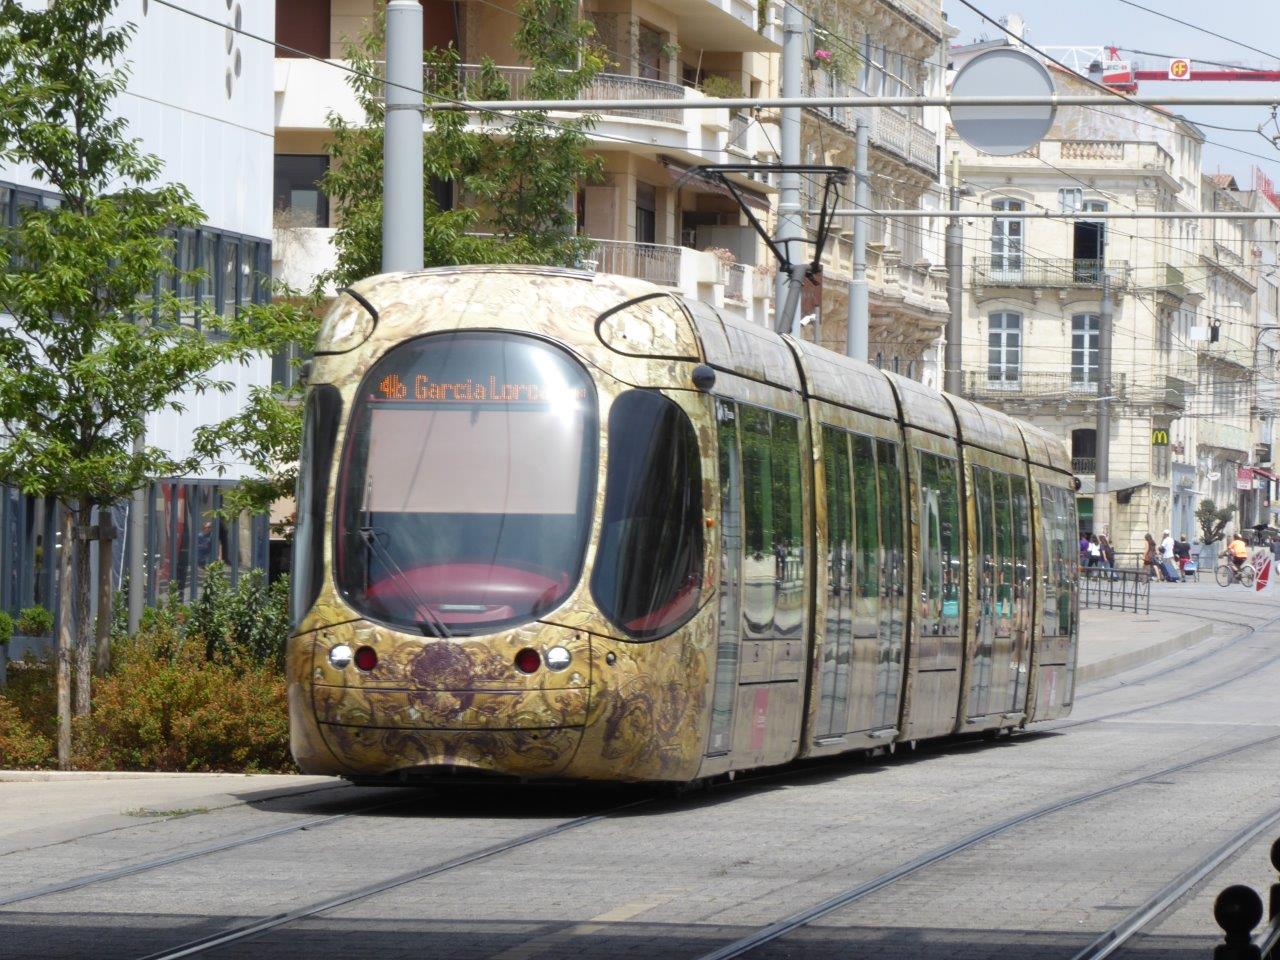 Tram der 4 Elemente - Montpellier